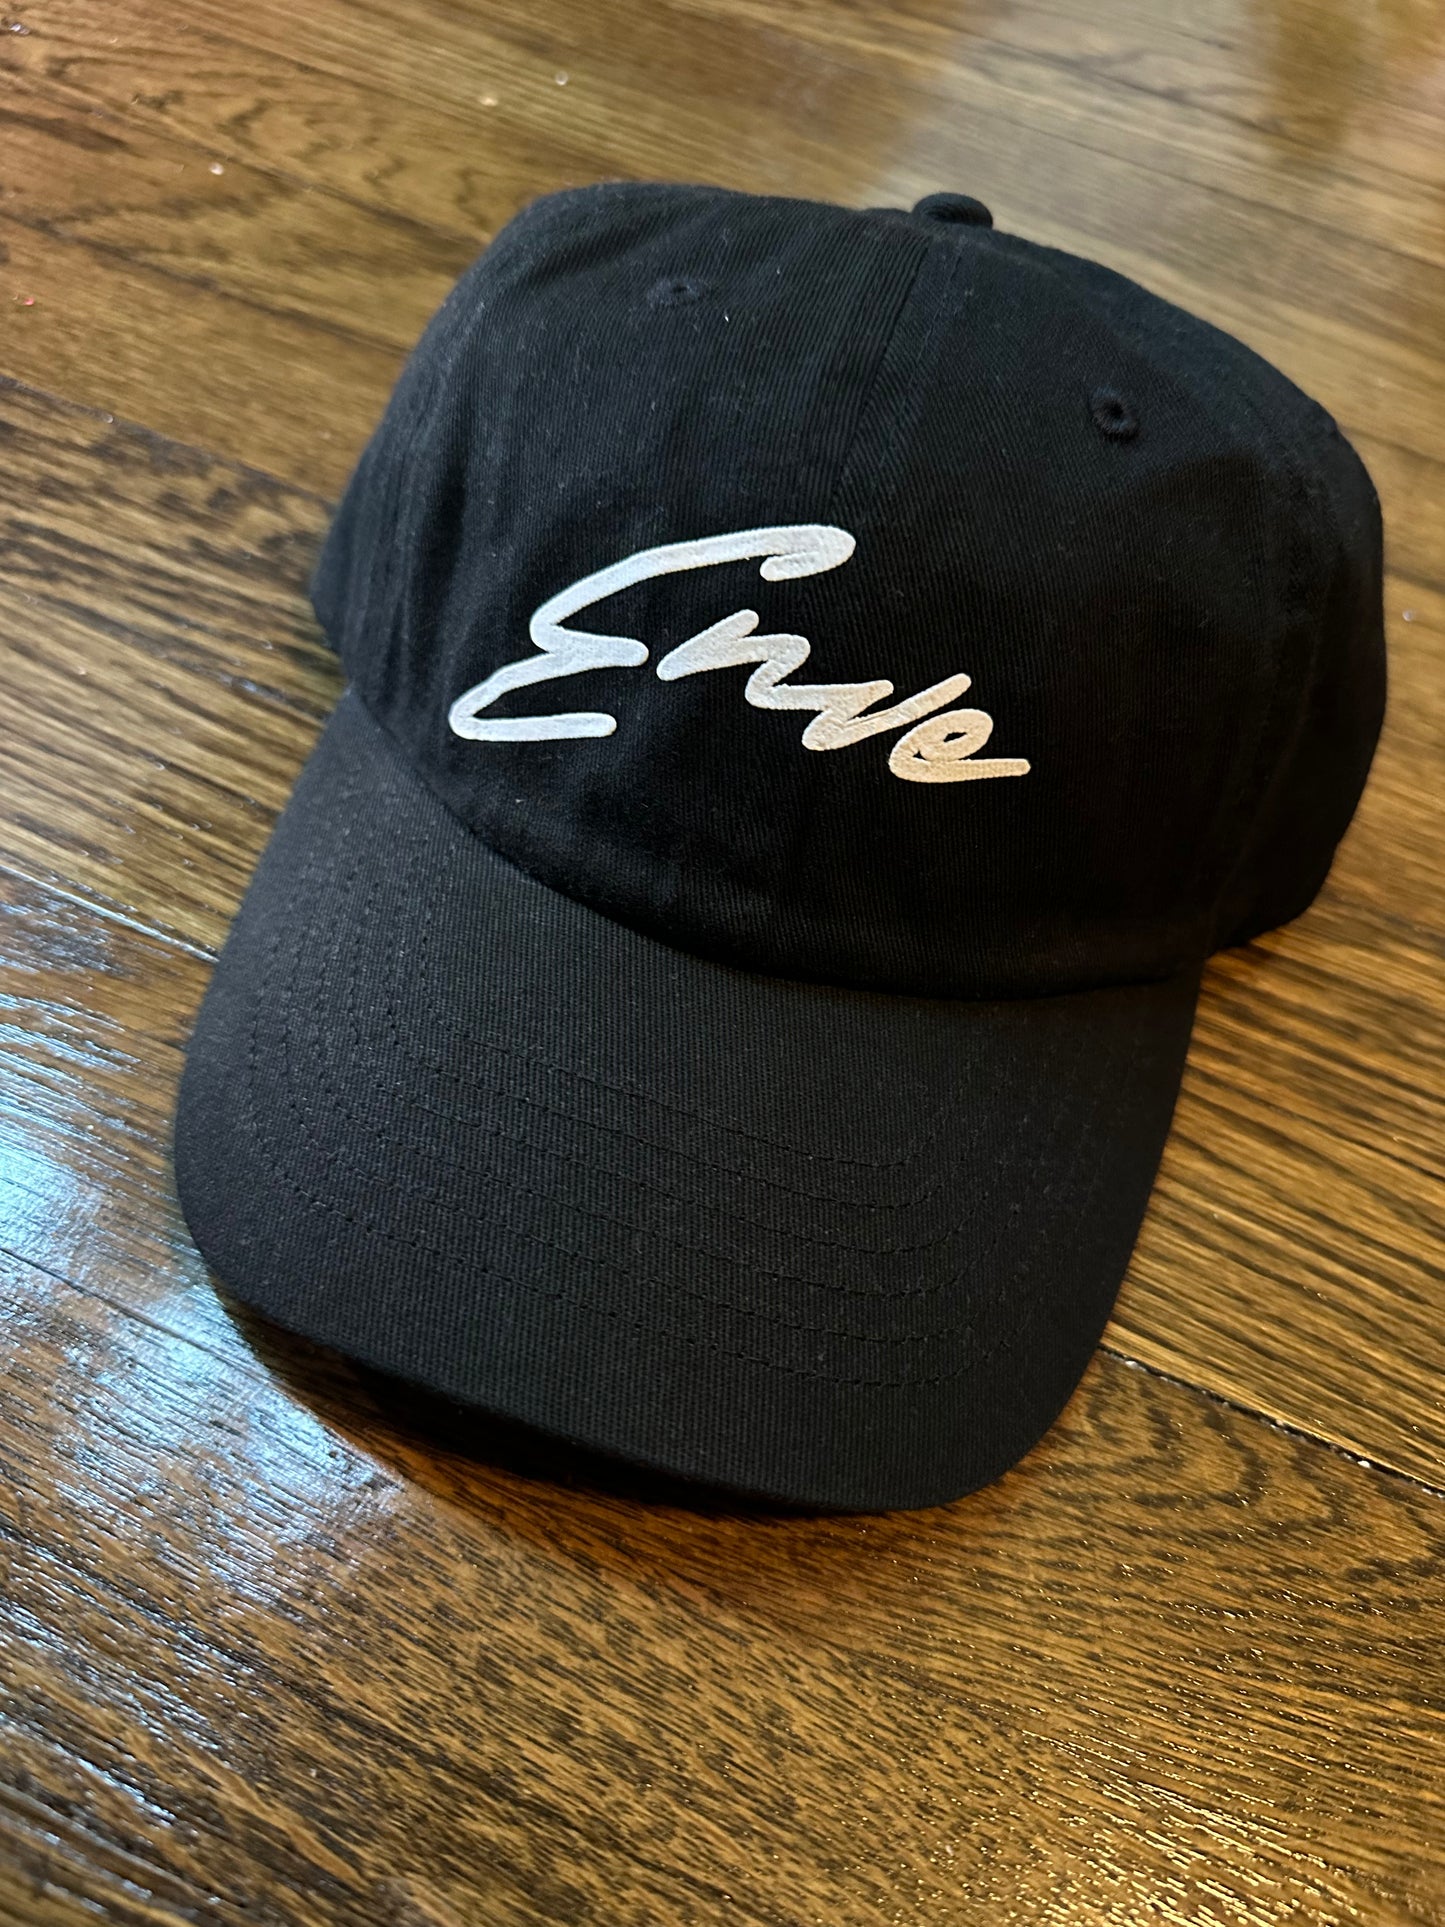 Signature Enve Hats 🧢